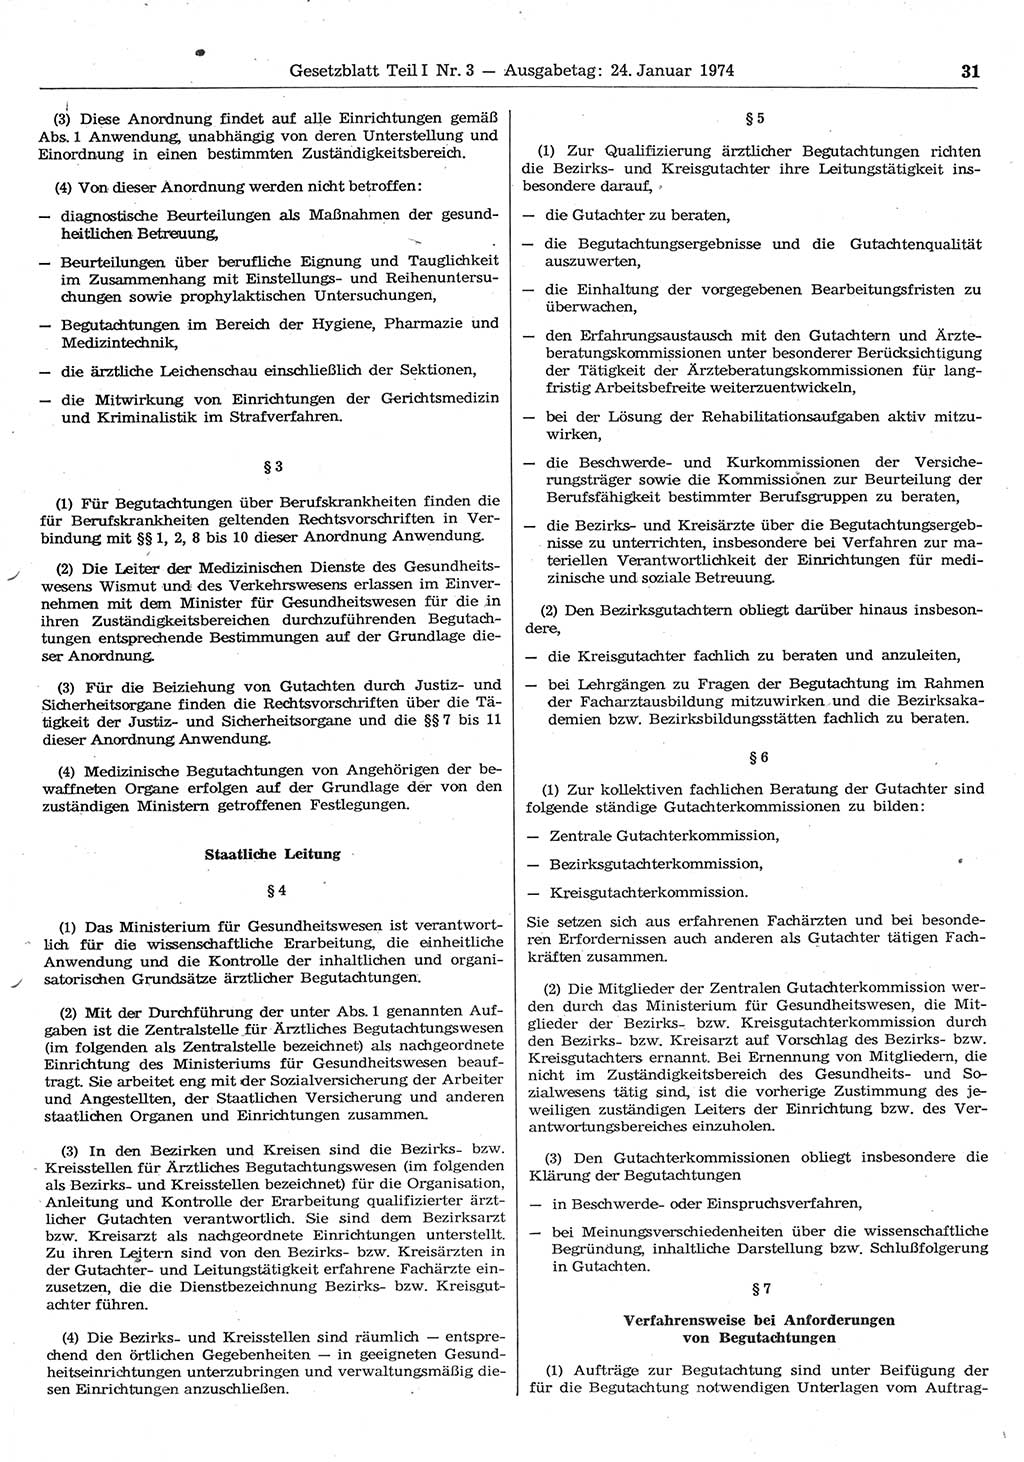 Gesetzblatt (GBl.) der Deutschen Demokratischen Republik (DDR) Teil Ⅰ 1974, Seite 31 (GBl. DDR Ⅰ 1974, S. 31)